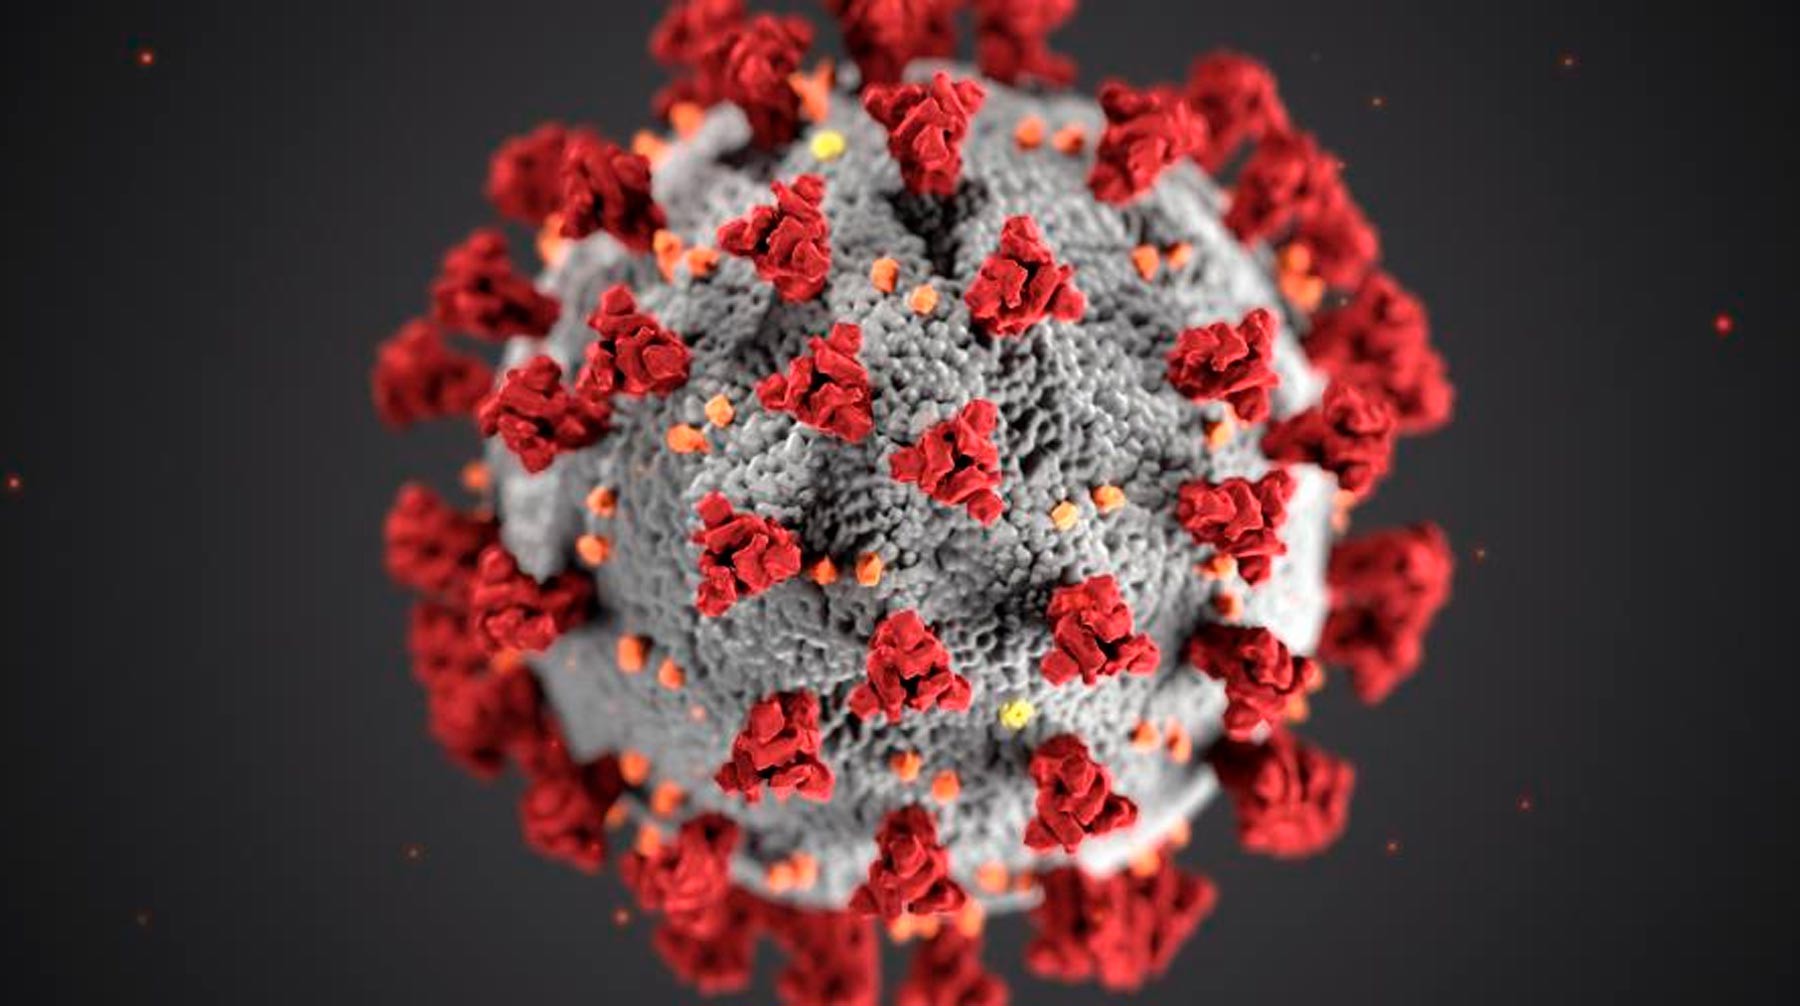 Dailystorm - Ученые из Франции определили смертельную температуру для коронавируса